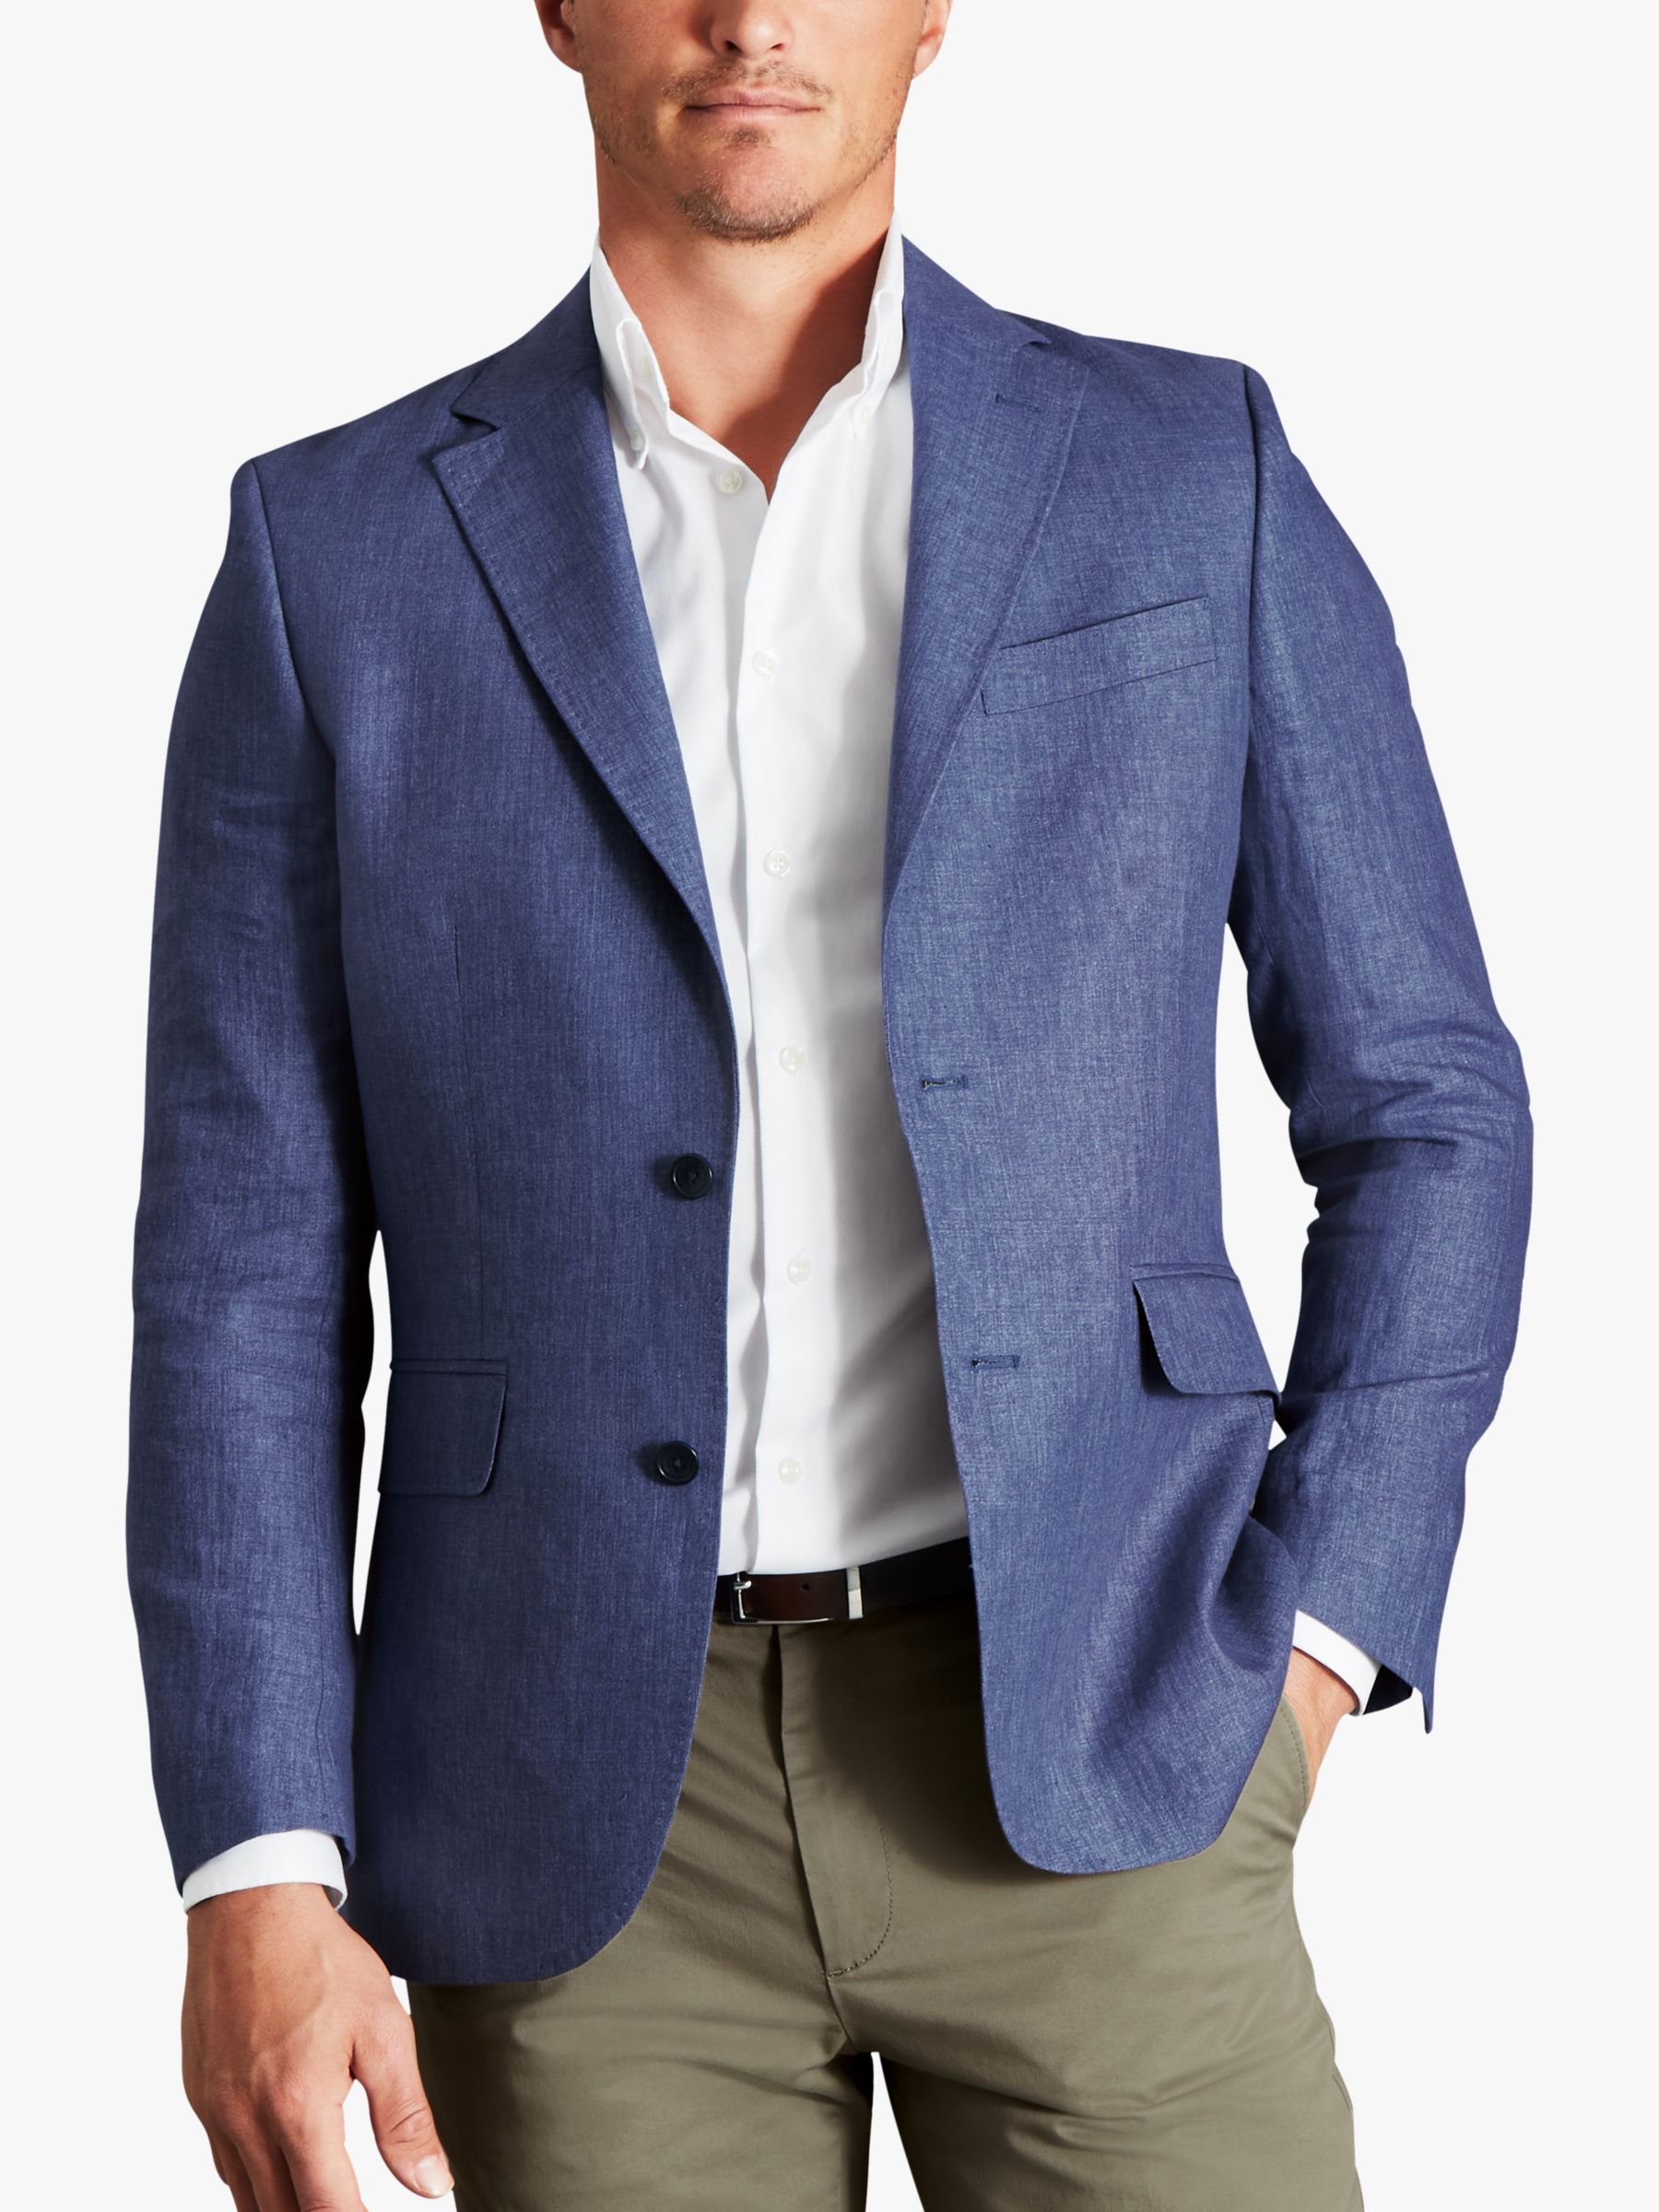 Charles Tyrwhitt Italian Linen Slim Fit Jacket, Blue, 36R